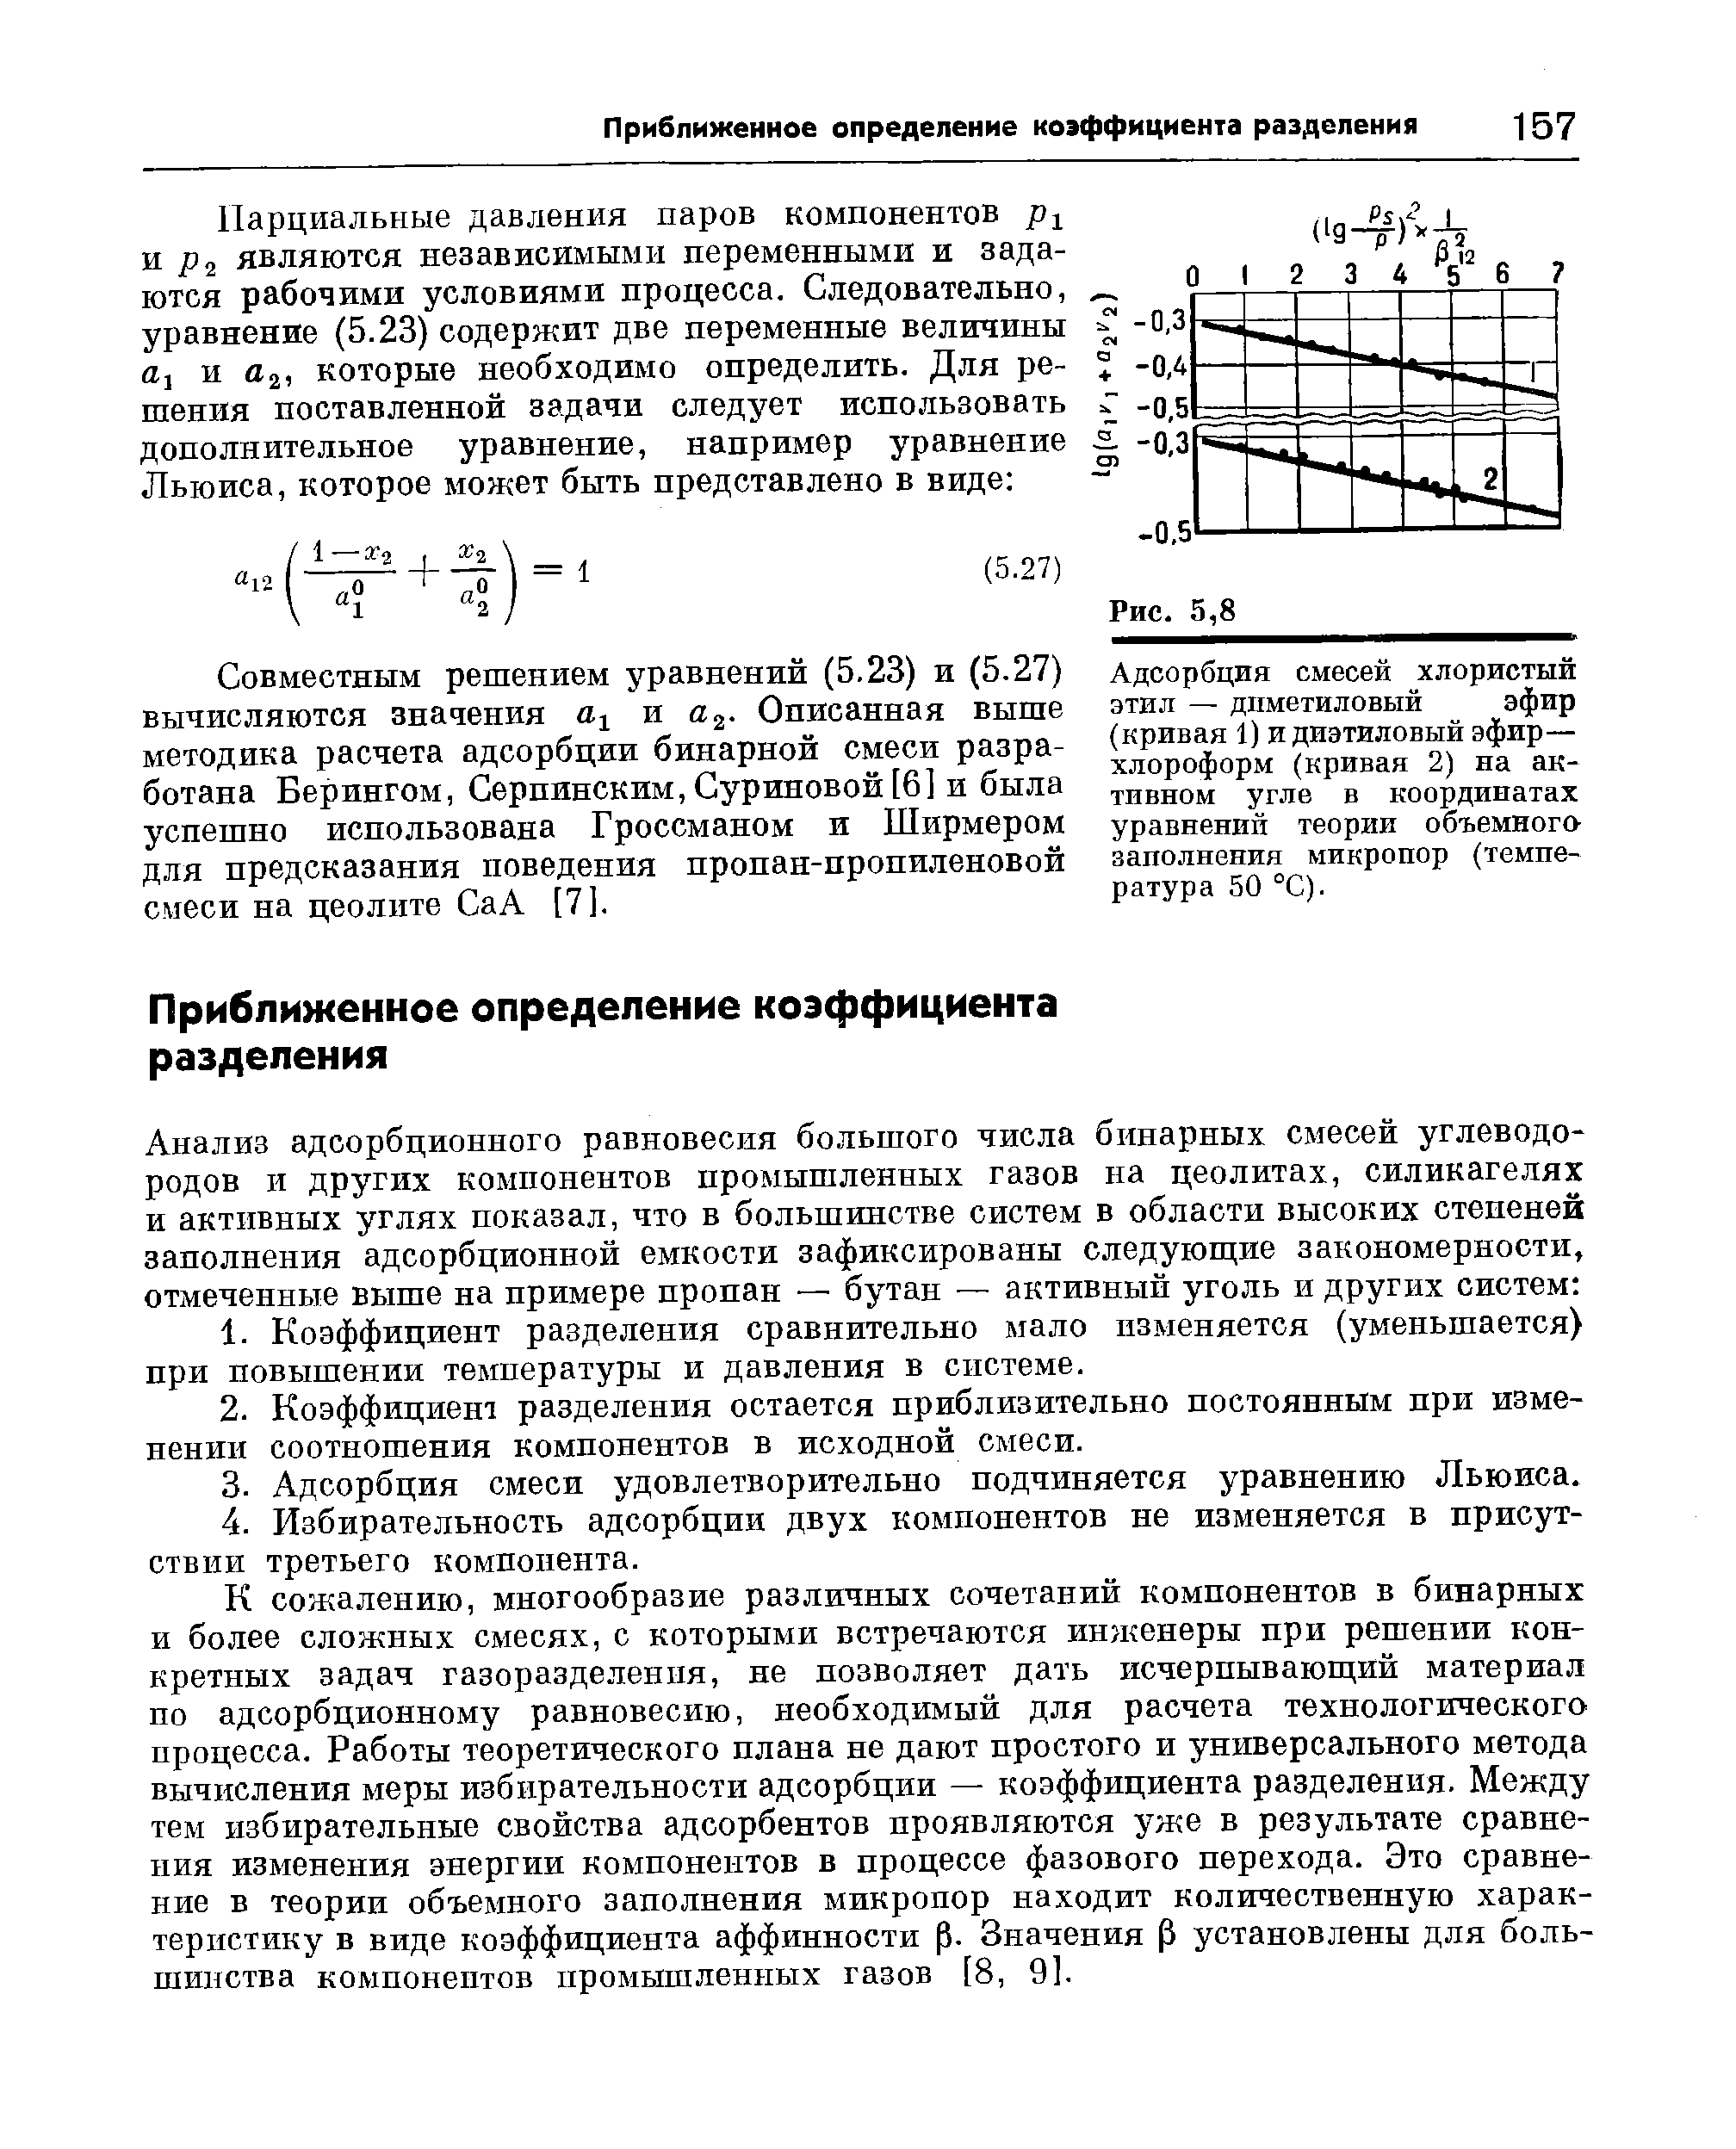 Адсорбция смесей хлористый этил — диметиловый эфир (кривая 1) и диэтиловый эфир— хлороформ (кривая 2) на активном угле в координатах уравнений теории объемного заполнения микропор (температура 50 °С).